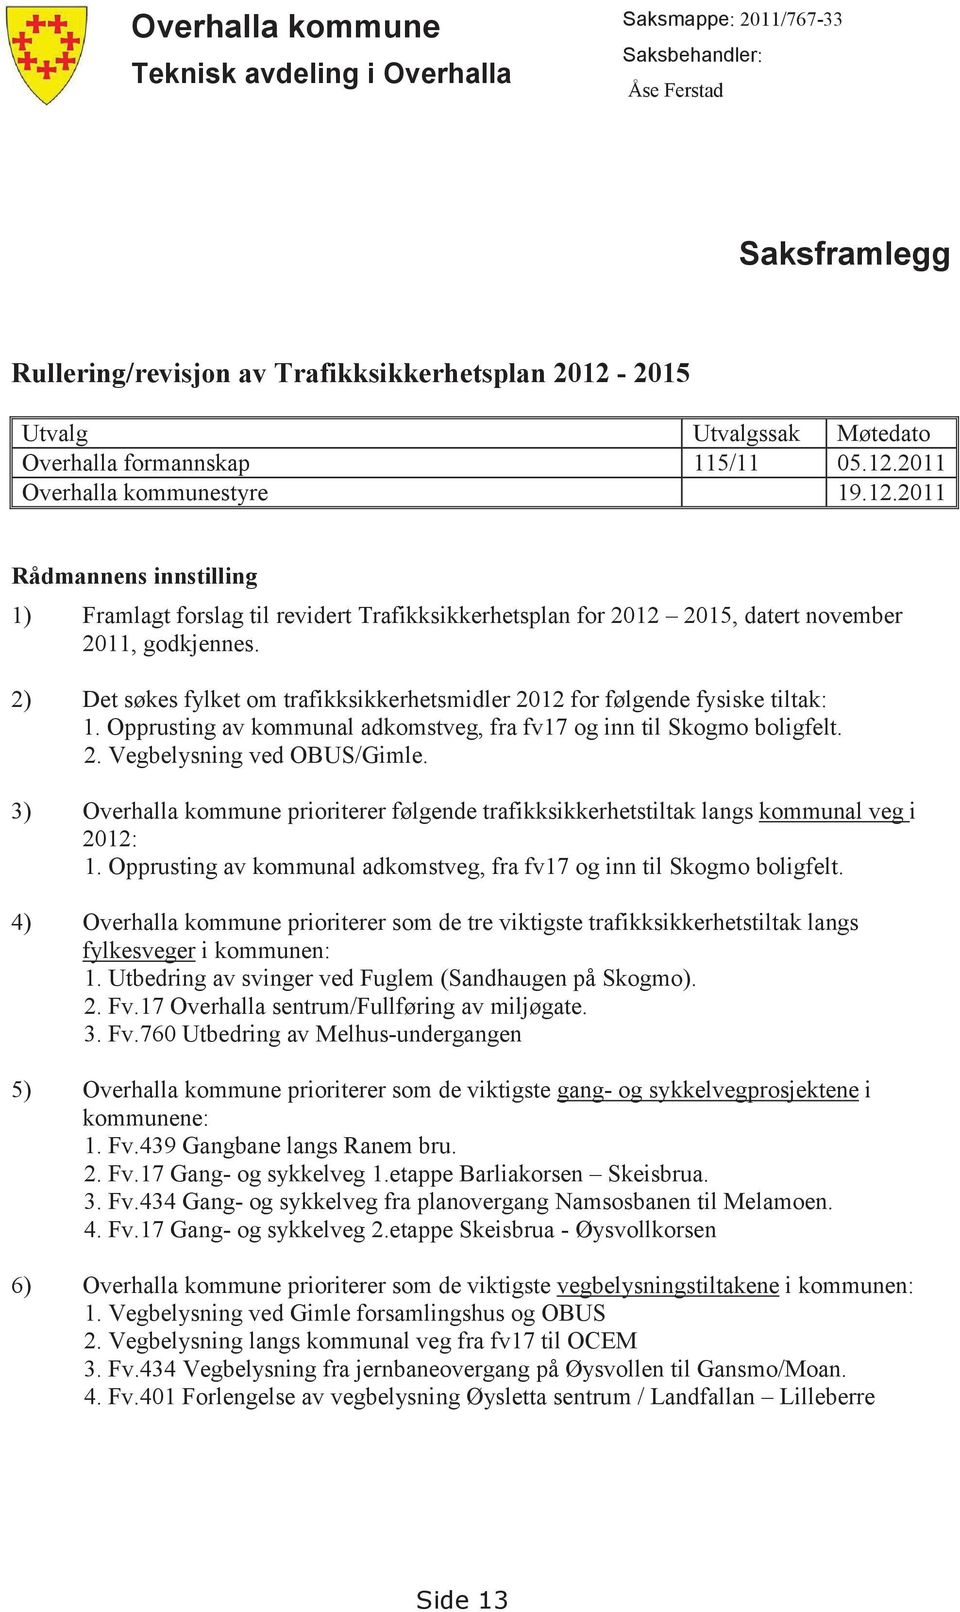 2) Det søkes fylket om trafikksikkerhetsmidler 2012 for følgende fysiske tiltak: 1. Opprusting av kommunal adkomstveg, fra fv17 og inn til Skogmo boligfelt. 2. Vegbelysning ved OBUS/Gimle.